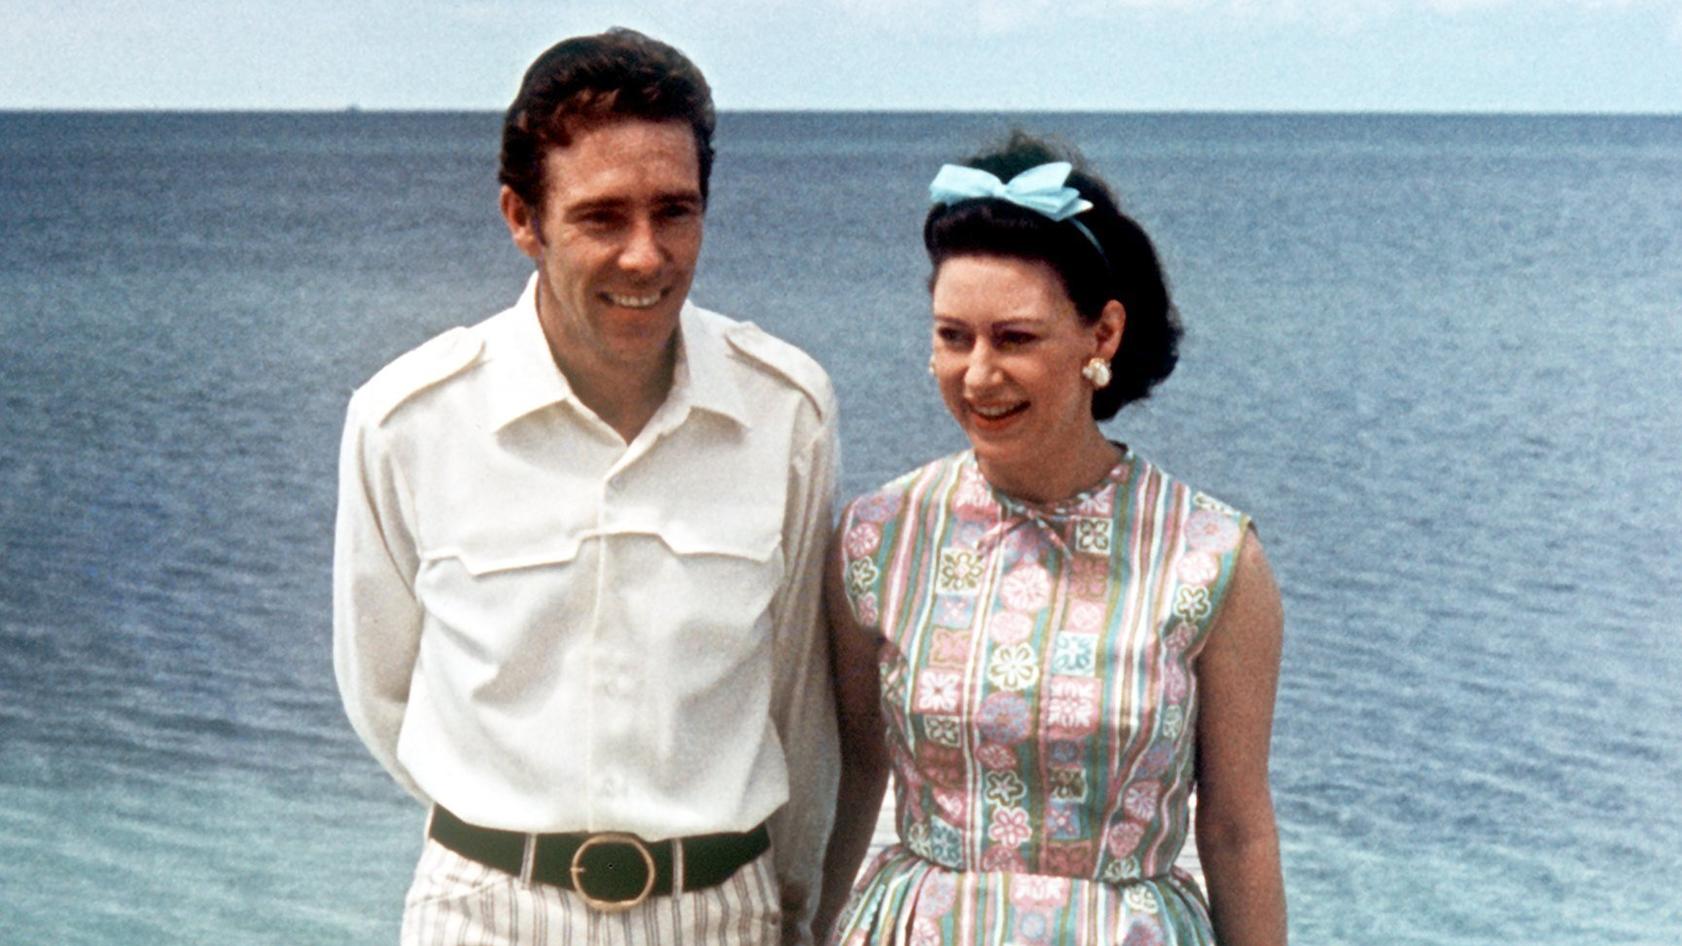 Prinzessin Margaret mit ihrem Ehemann, dem Earl of Snowdon, während eines Ferienaufenthaltes auf den Bahamas (undatierte Aufnahme).